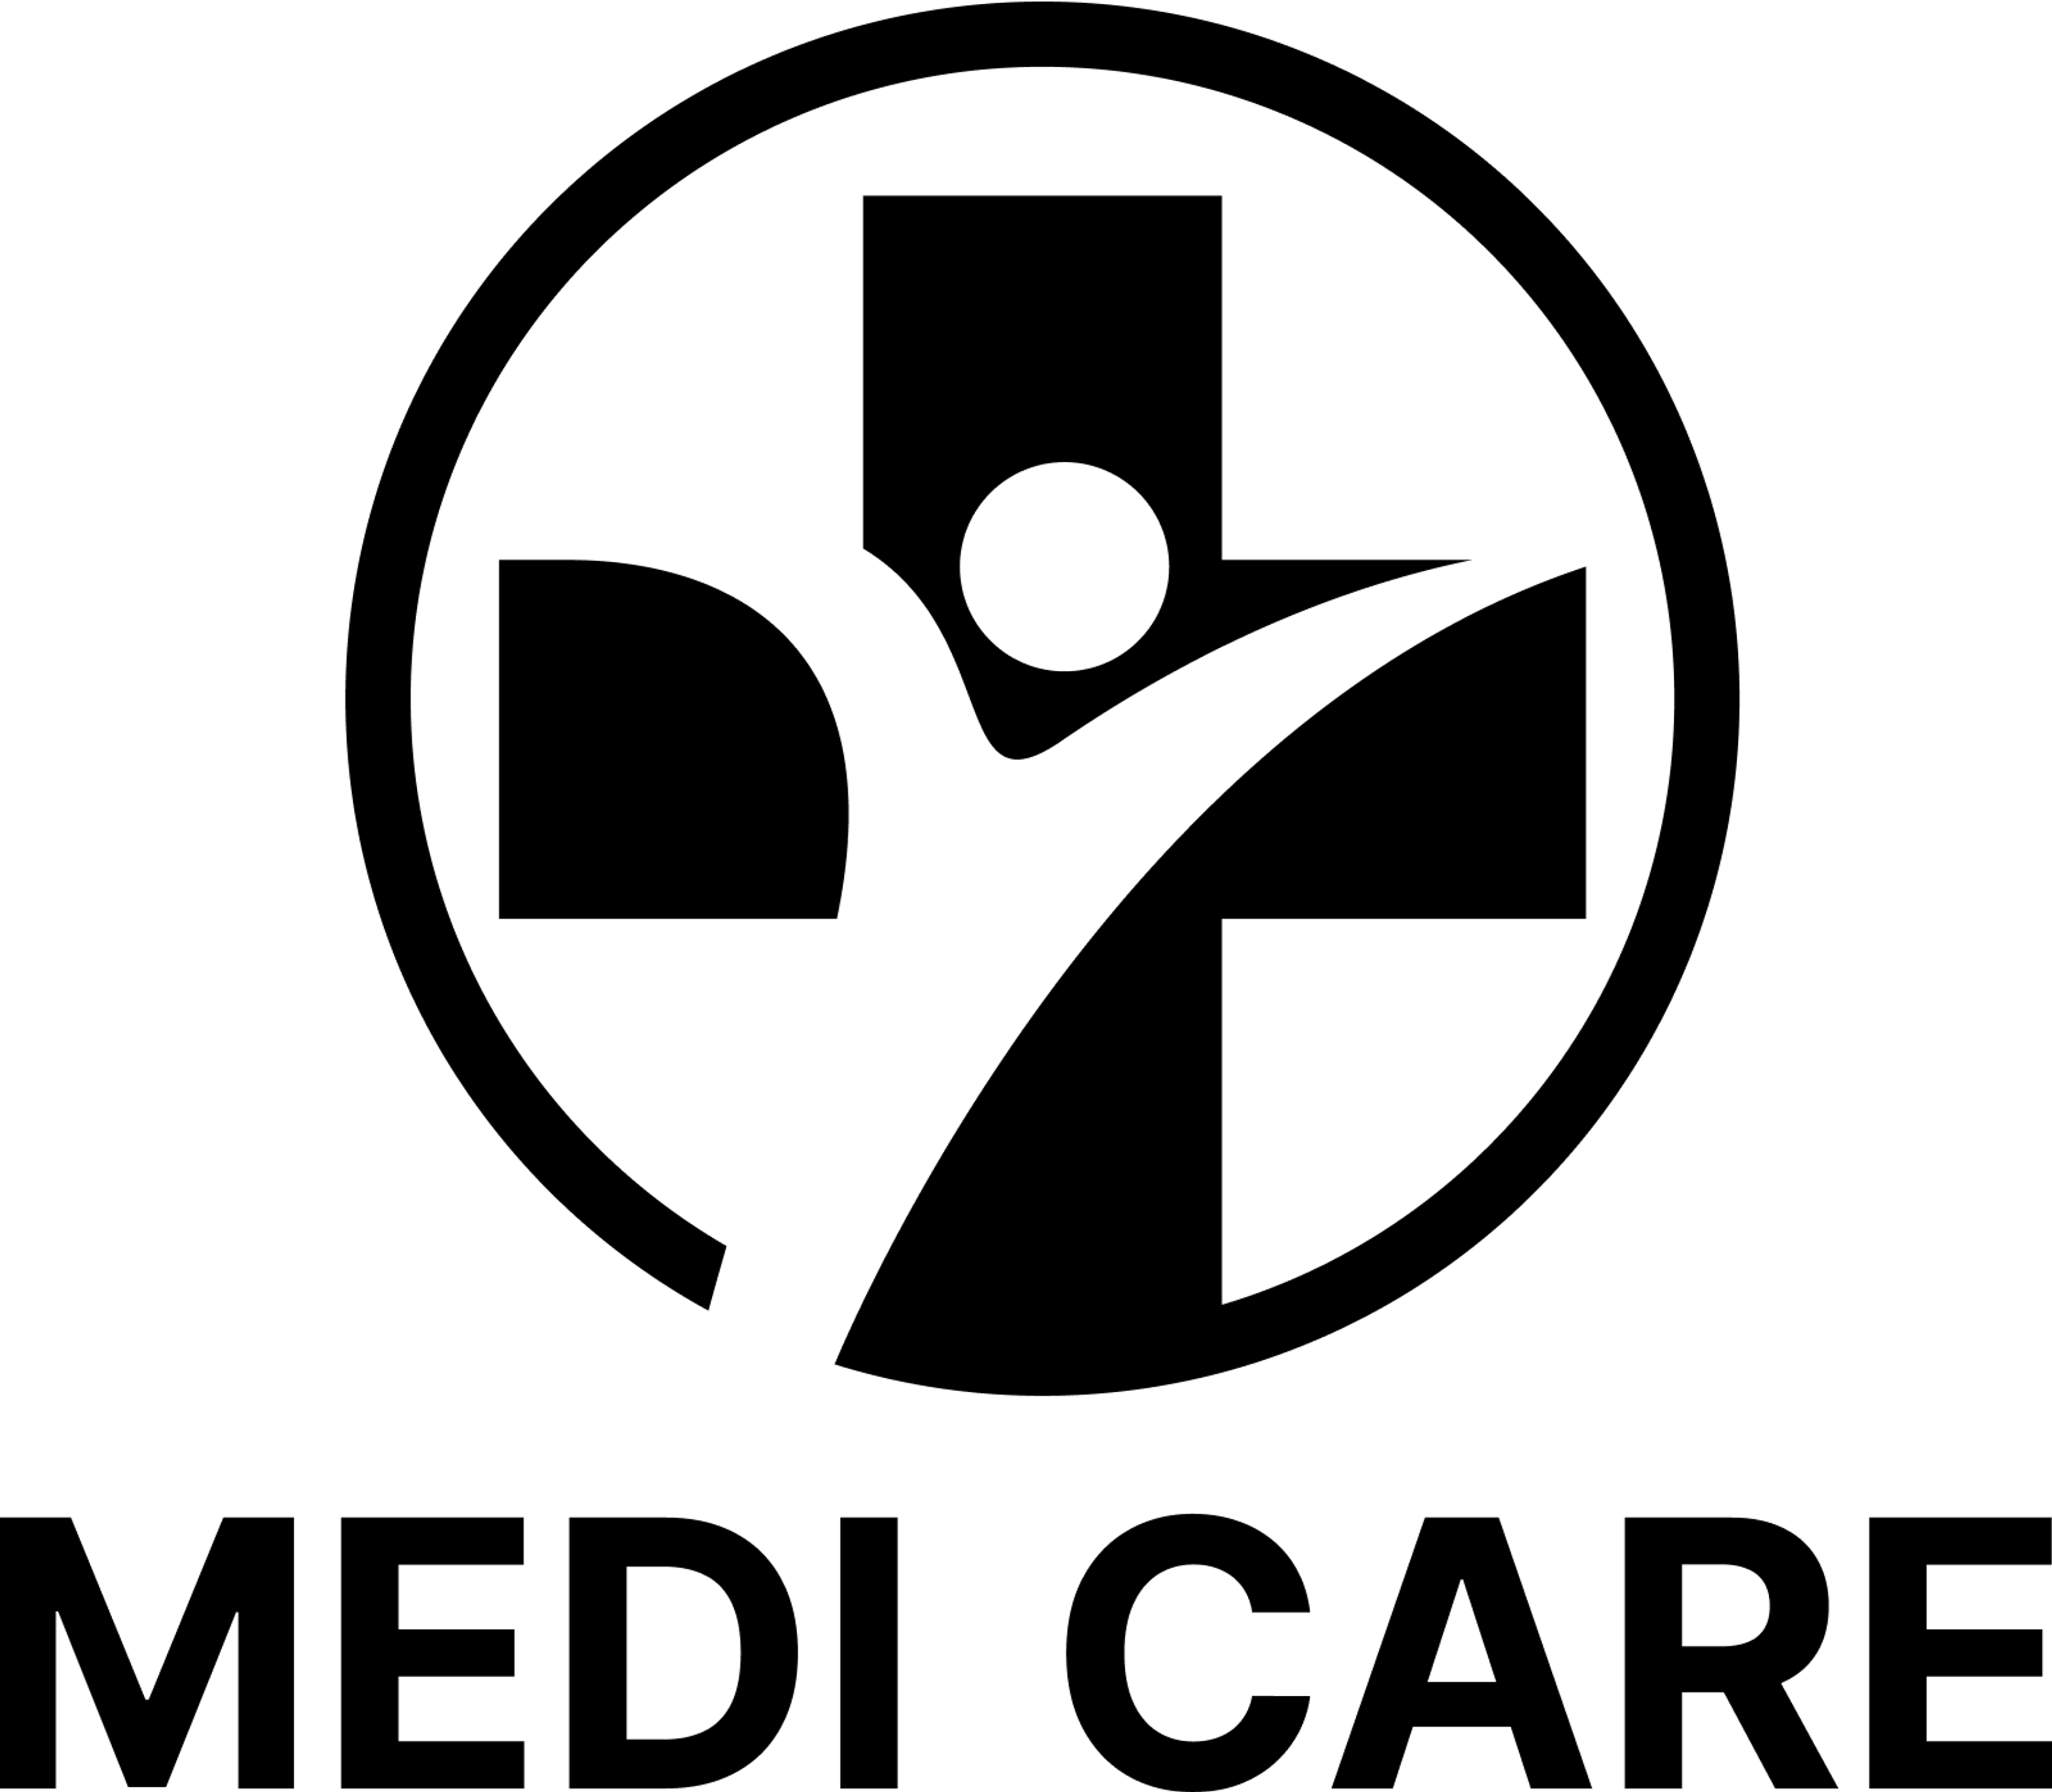 Medi Care logo in black on a transparent background